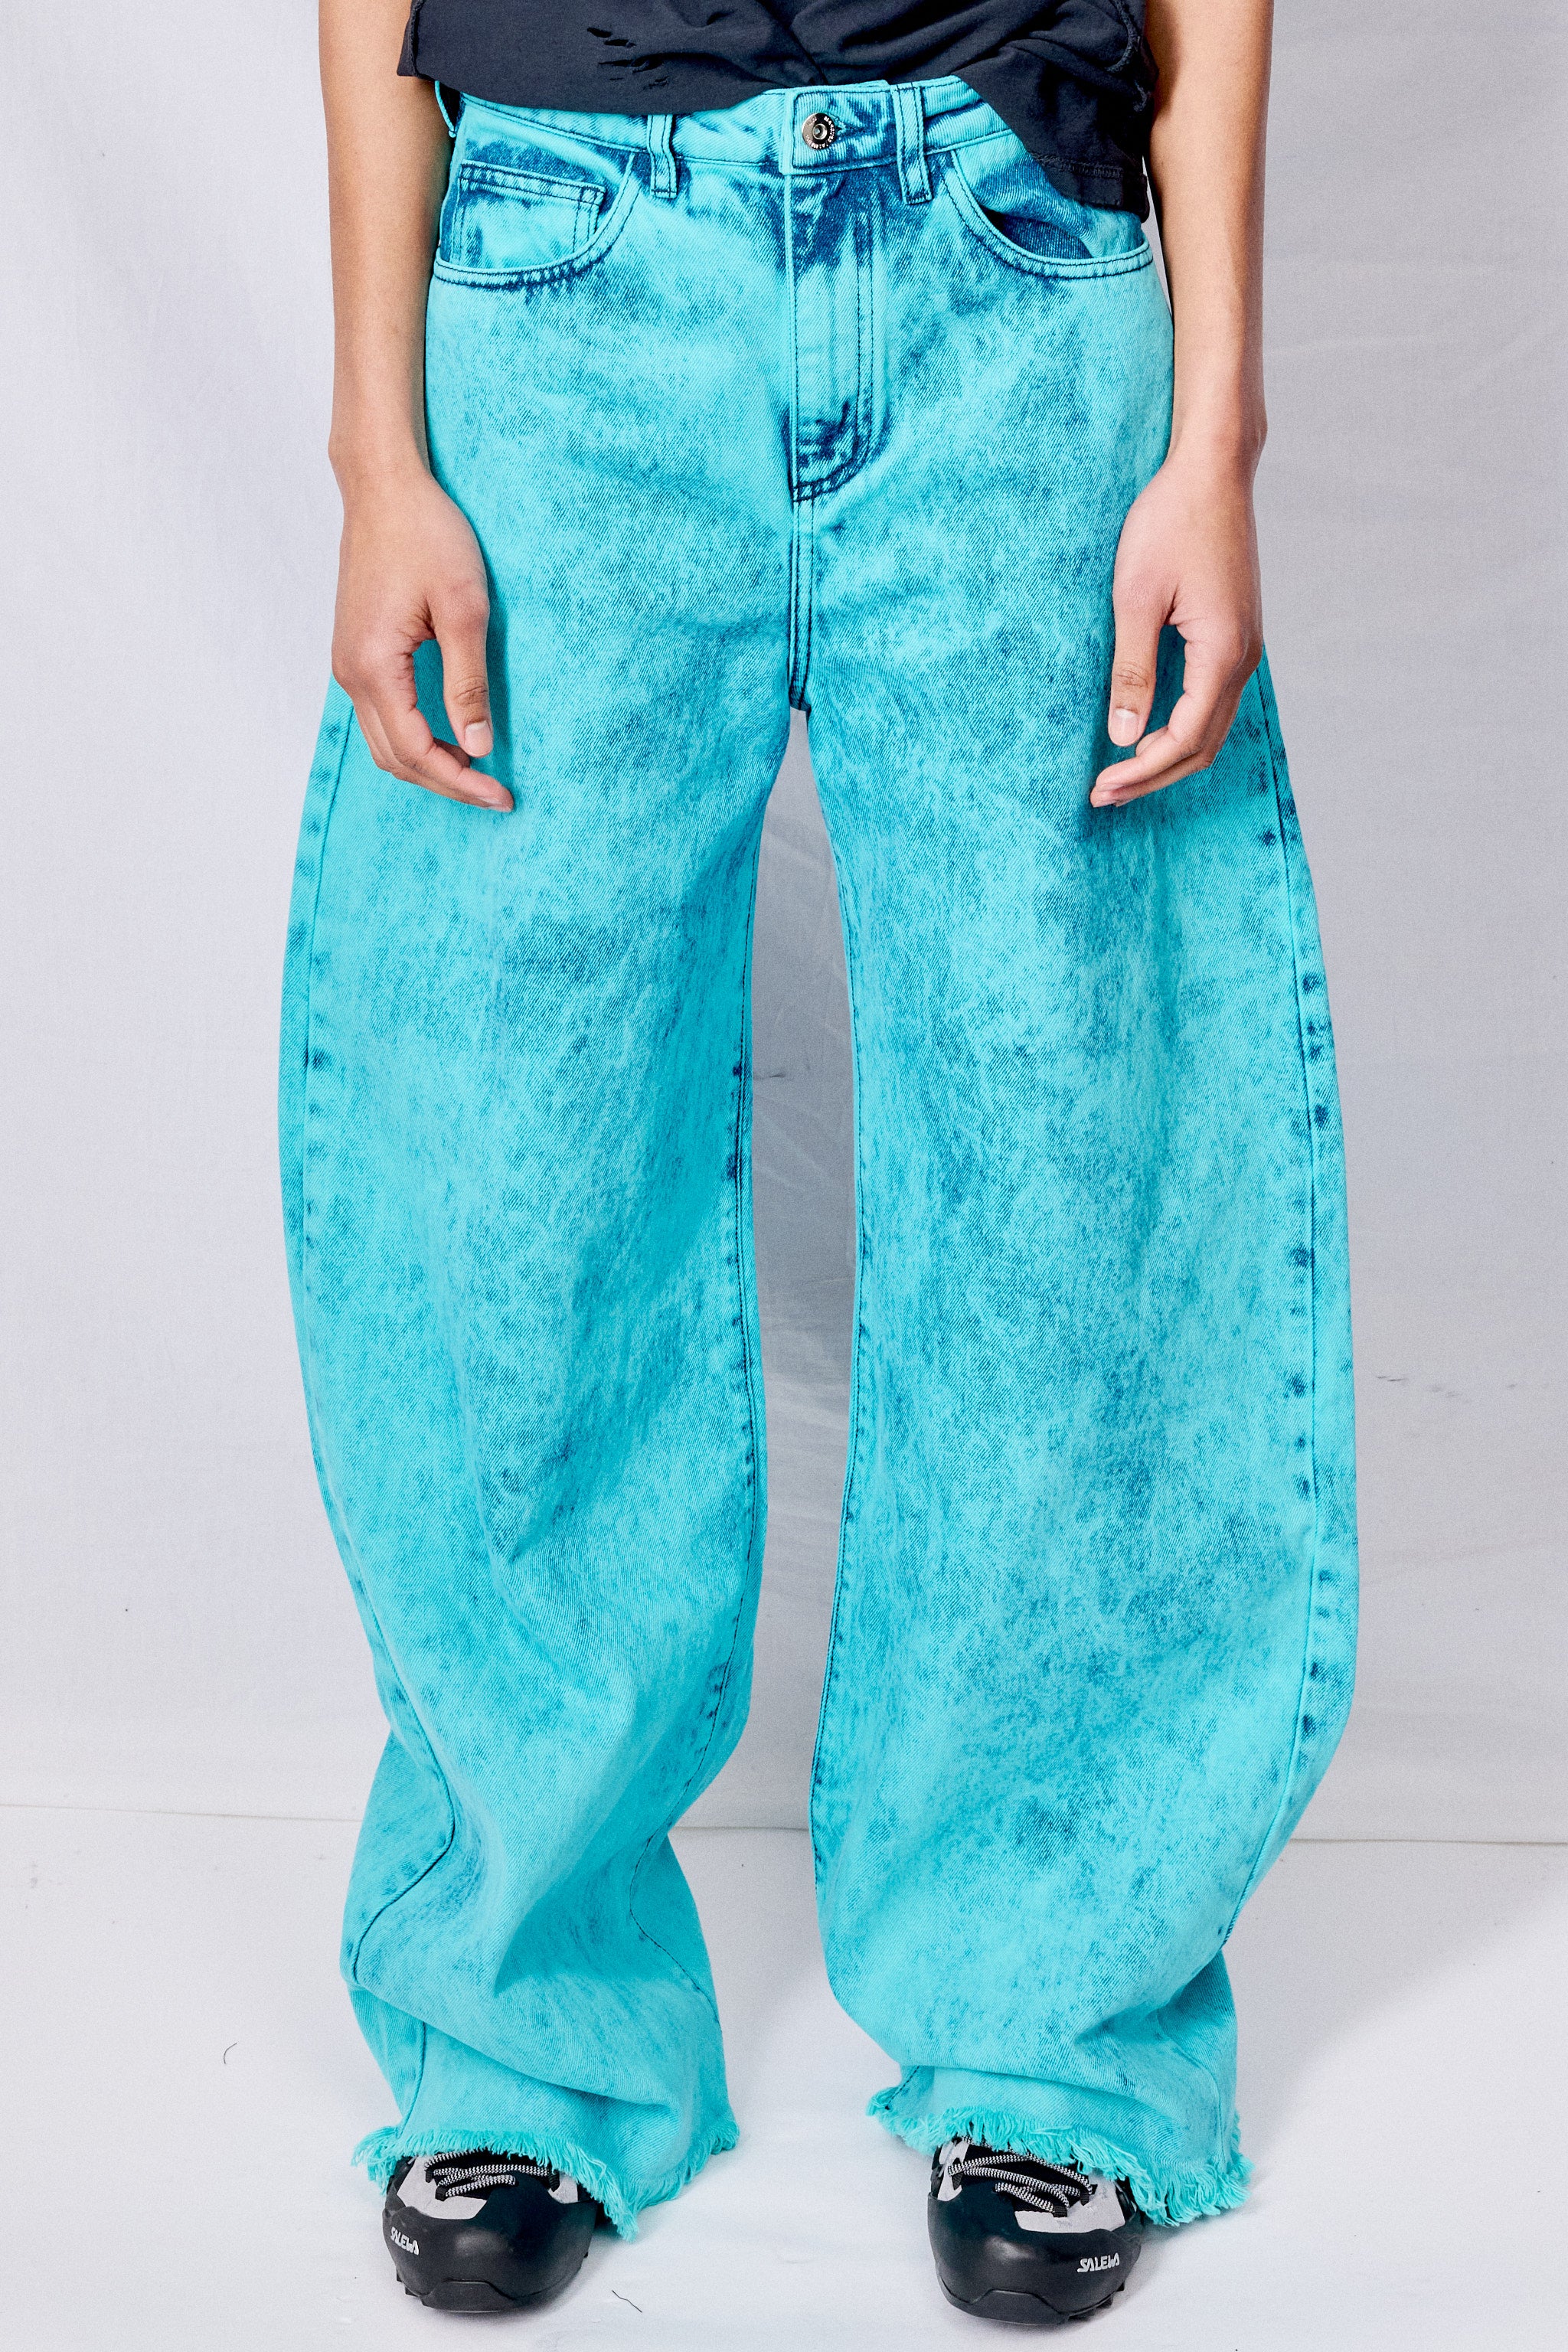 Turquoise Denim Boyfriend Jeans